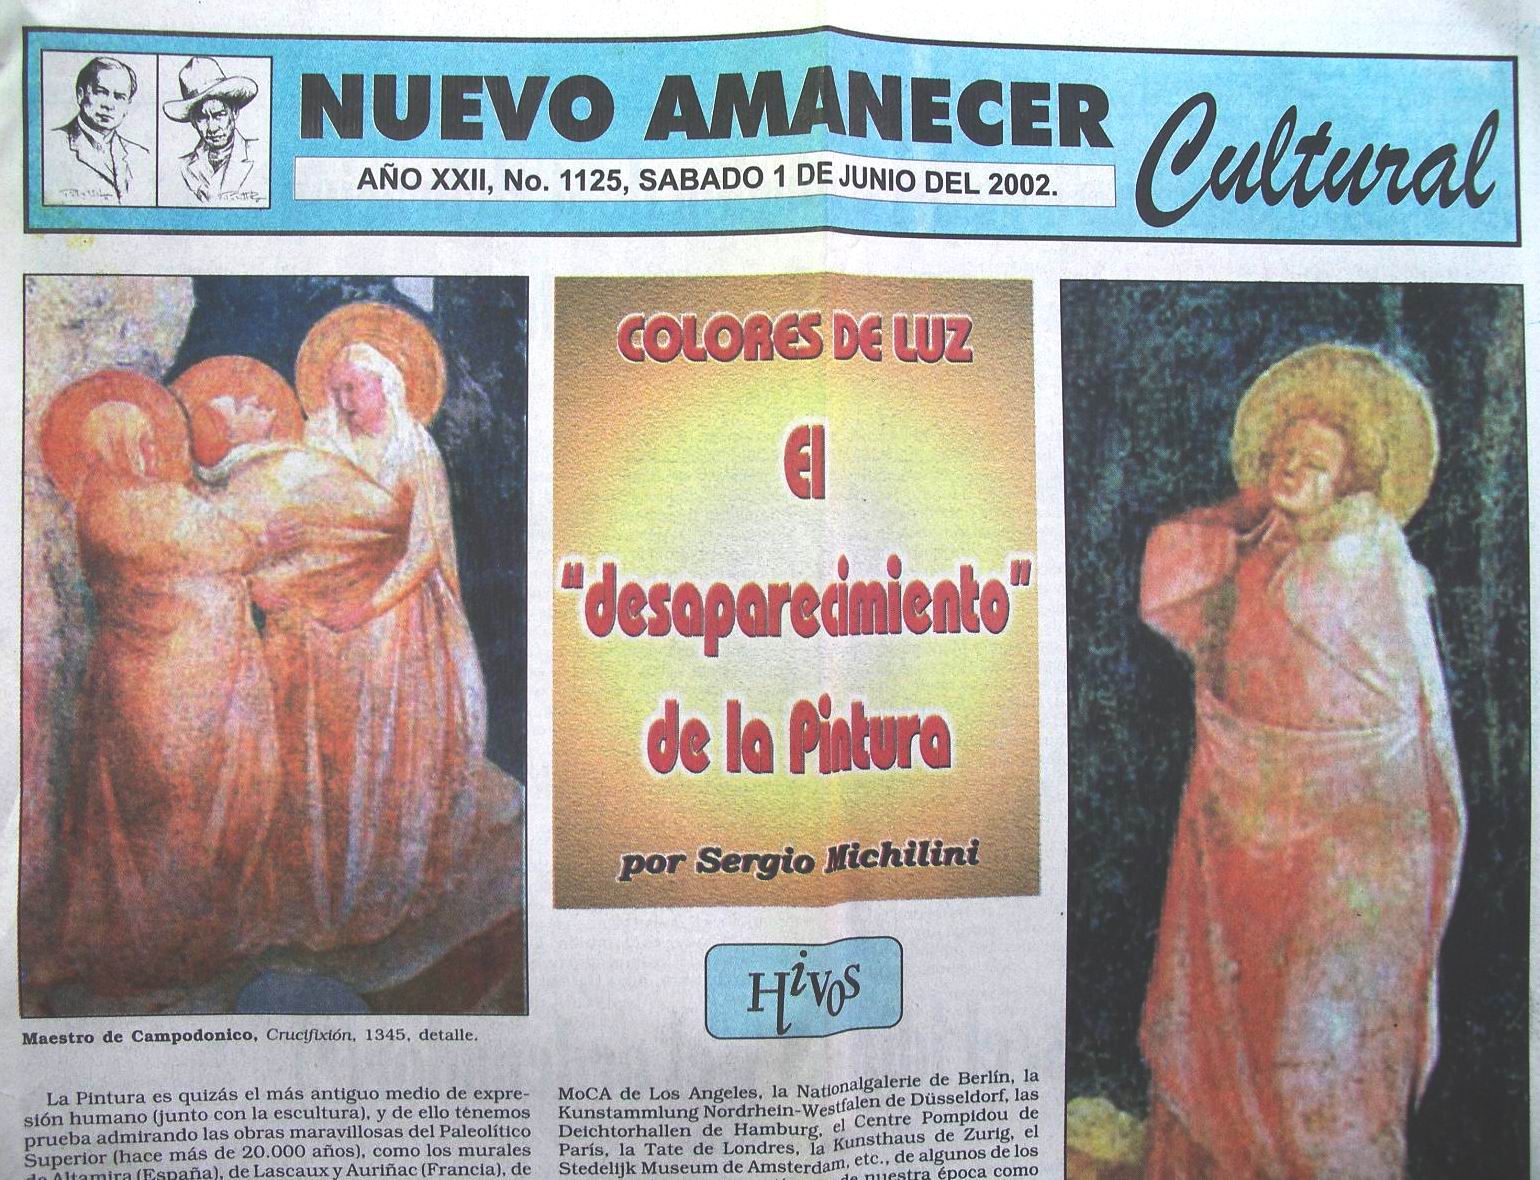 2002-nuevo-amanecer-cultural-1-giugno-pag1